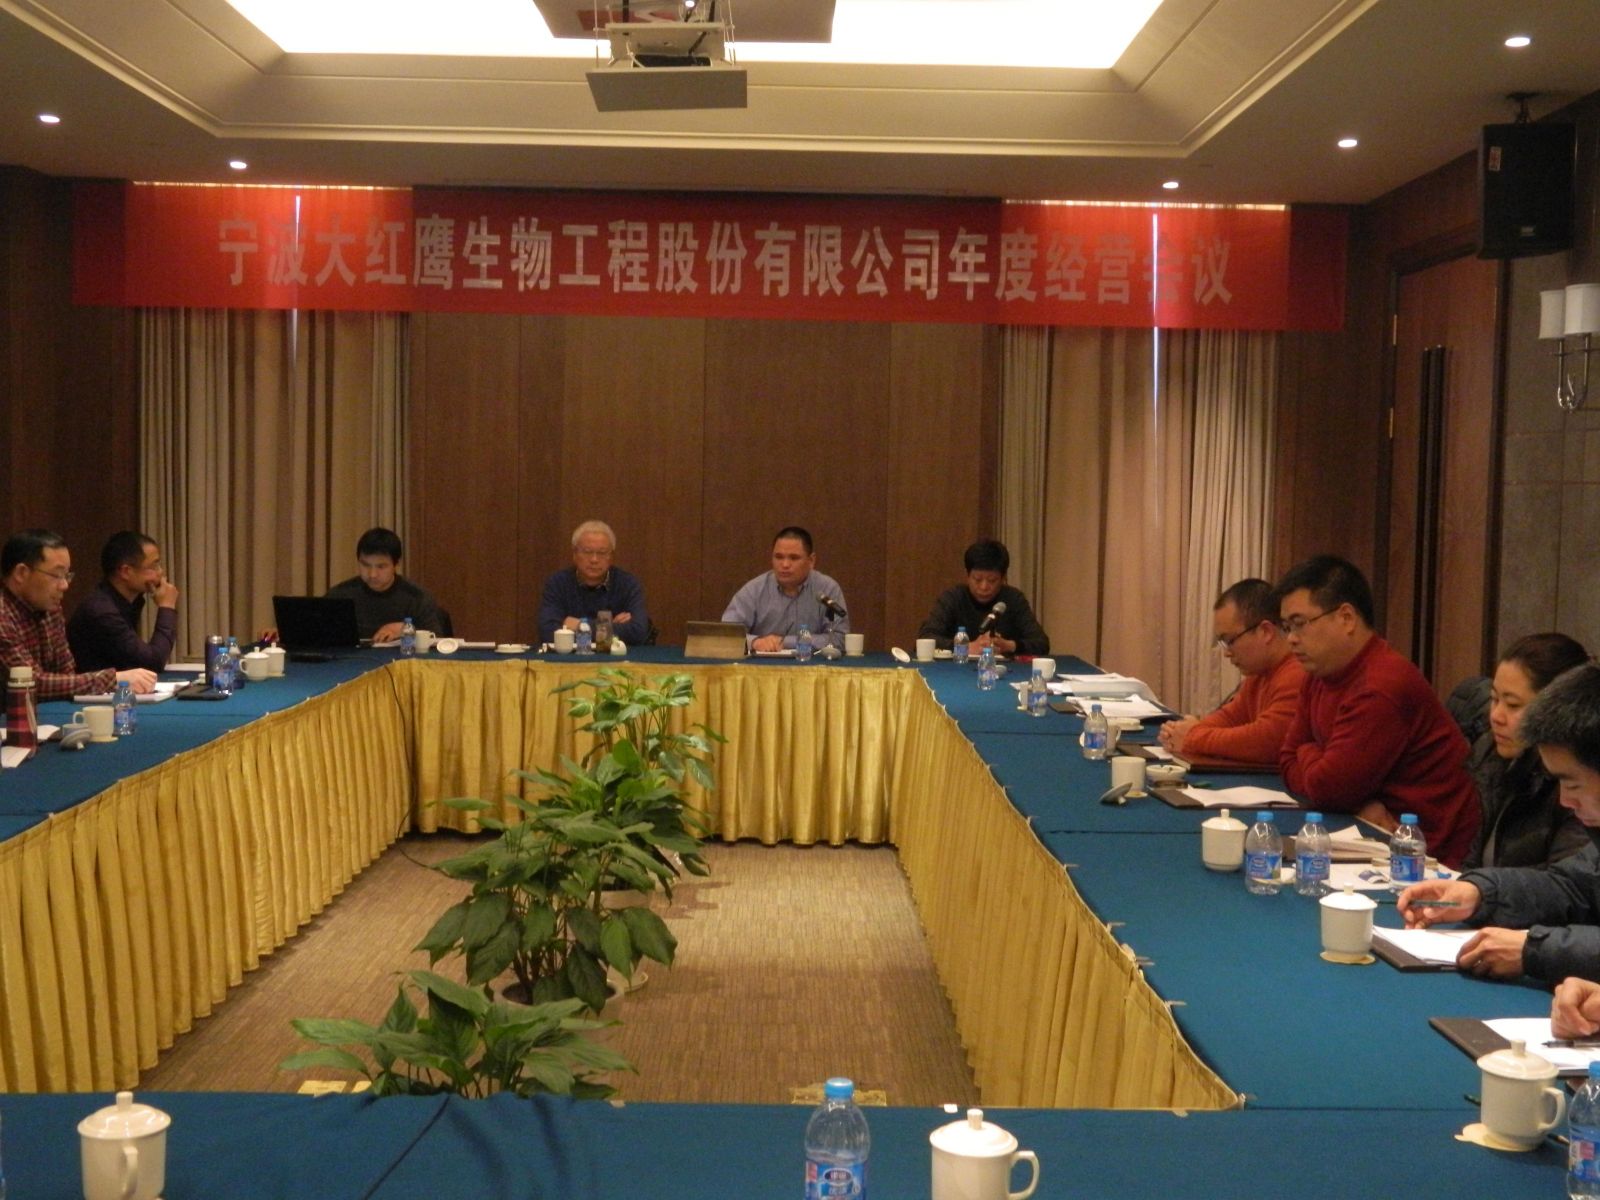 热烈祝贺宁波大红鹰生物2014年度经营会议顺利召开